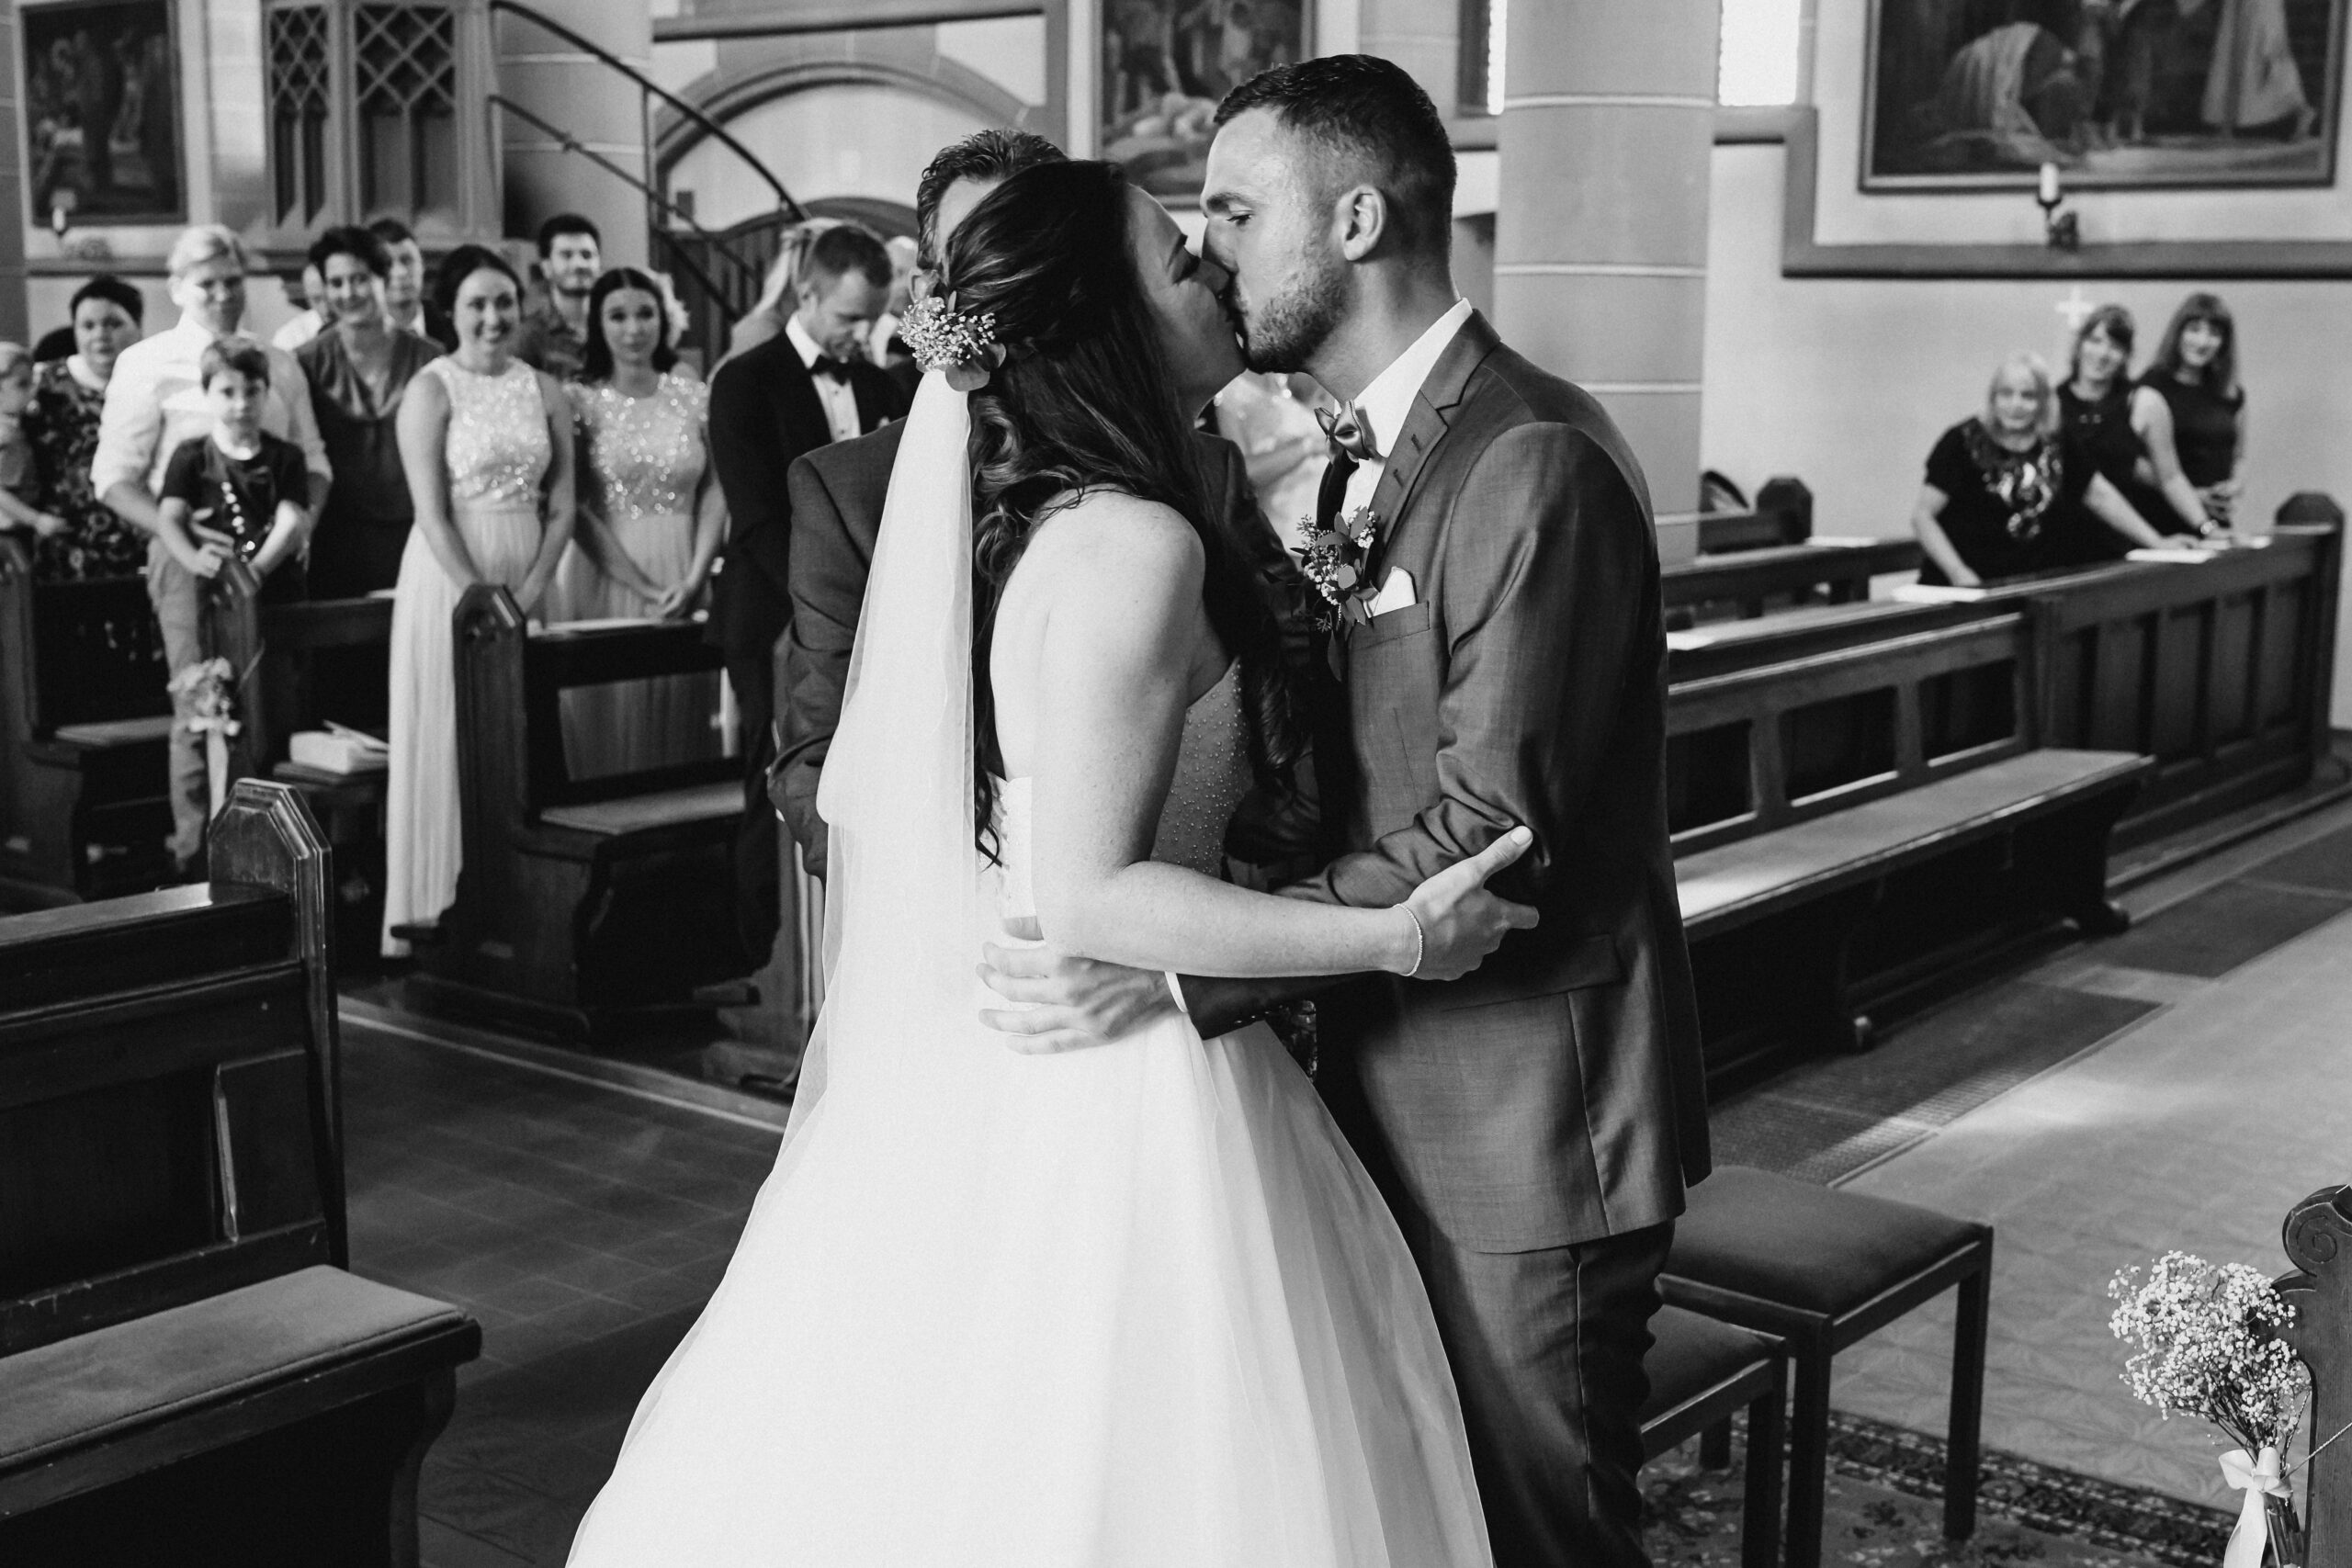 Das Brautpaar küsst sich in der Kirche nach dem der Brautvater die Braut zum Altar als Einlauf begleitet hat.